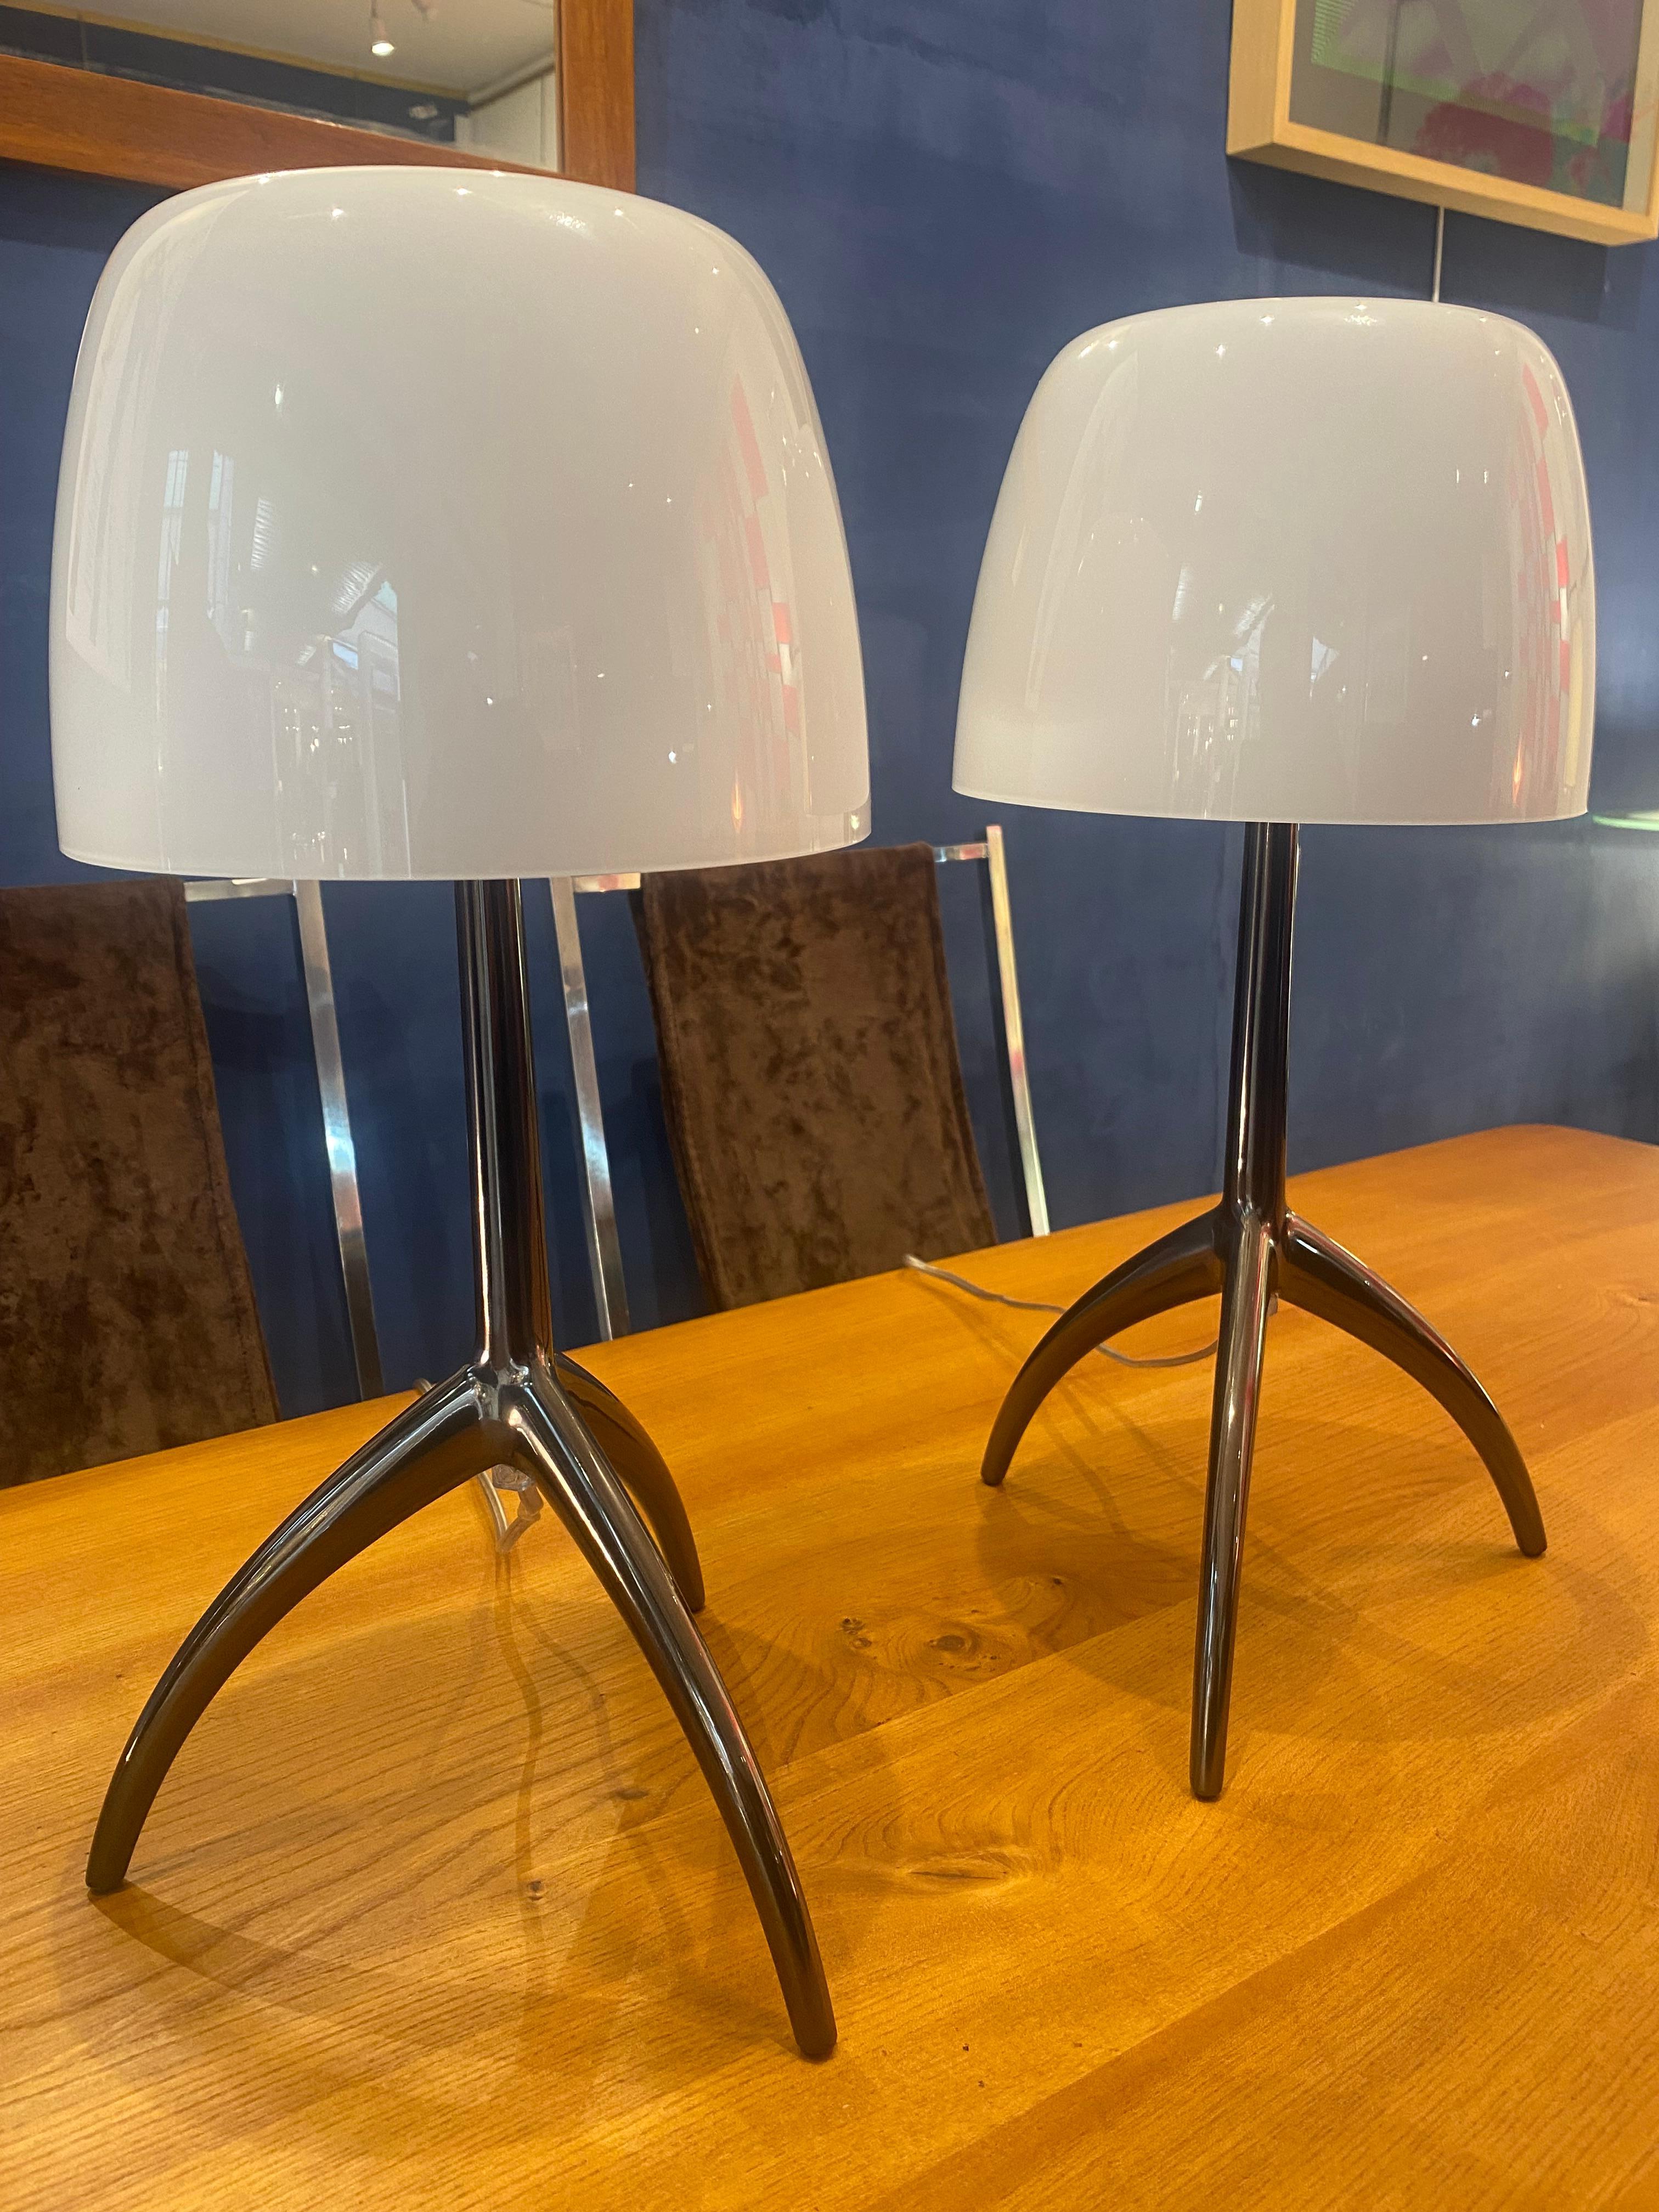 Paar Lampen des Modells Foscarini Lumière
Struktur aus weißem geblasenem Glas und Aluminiumbeinen
H 45 x 26 im Durchmesser
Neu
In perfektem Zustand